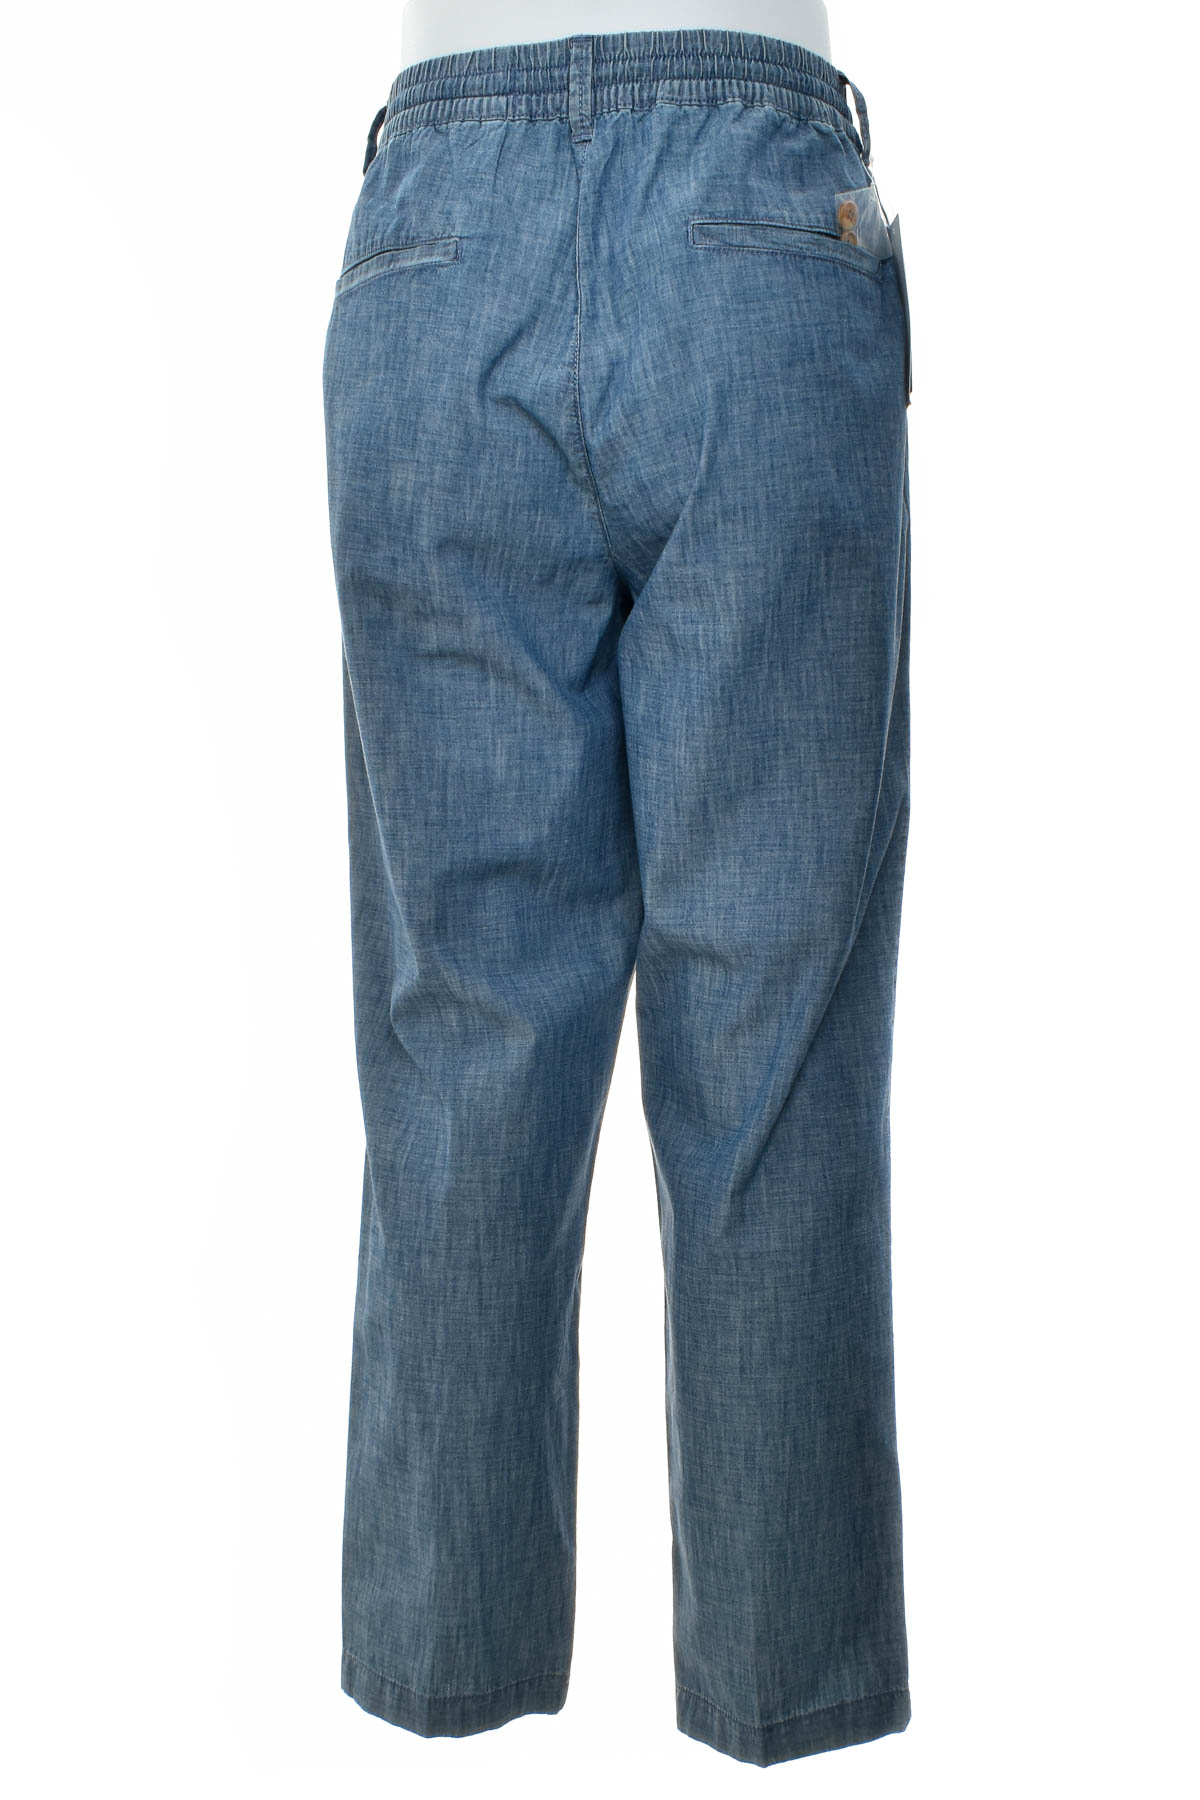 Pantalon pentru bărbați - United Colors of Benetton - 1